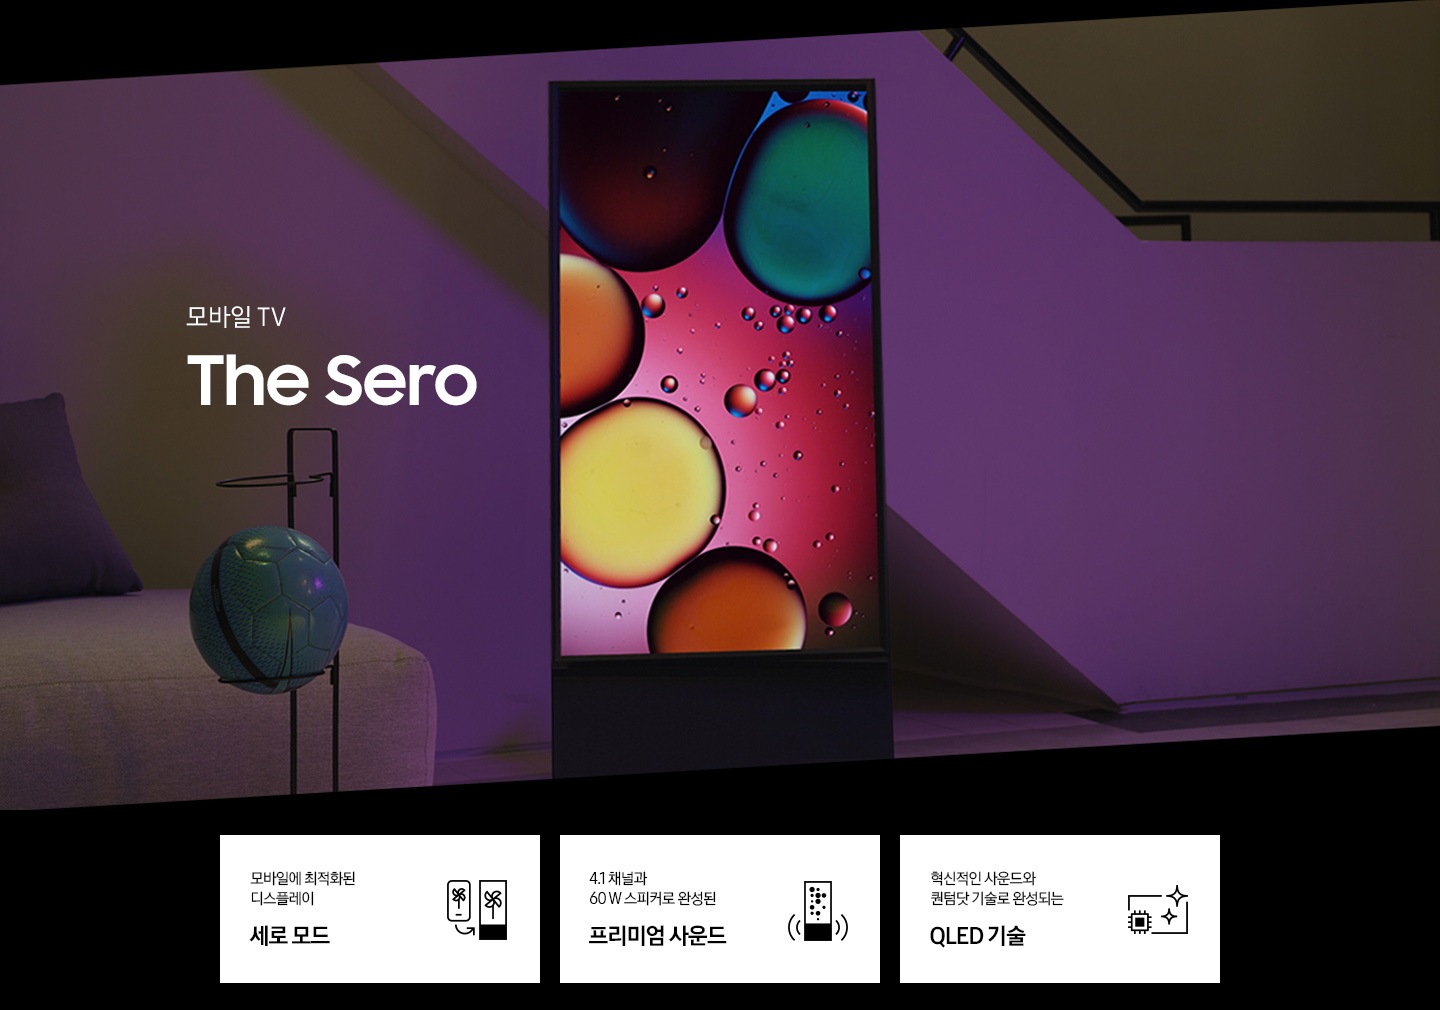 모바일 TV The Sero 의 KV입니다. 세로화면으로 놓여있는 세로 제품이 보이고 화면안에는 물방울 그림이 보입니다. 하단 3 POD에는 모바일에 최적화된 디스플레이 세로모드 문구와 The Sero TV를 형상화 한 아이콘, 4.1 채널과 60W 스피커로 완성된 프리미엄 사운드 문구와 The Sero TV 좌우로 사운드 음파 아이콘, 혁신적인 사운드와 퀀텀닷 기술로 완성되는 QLED 기술 문구와 TV 옆으로 반짝이는 아이콘이 보입니다.